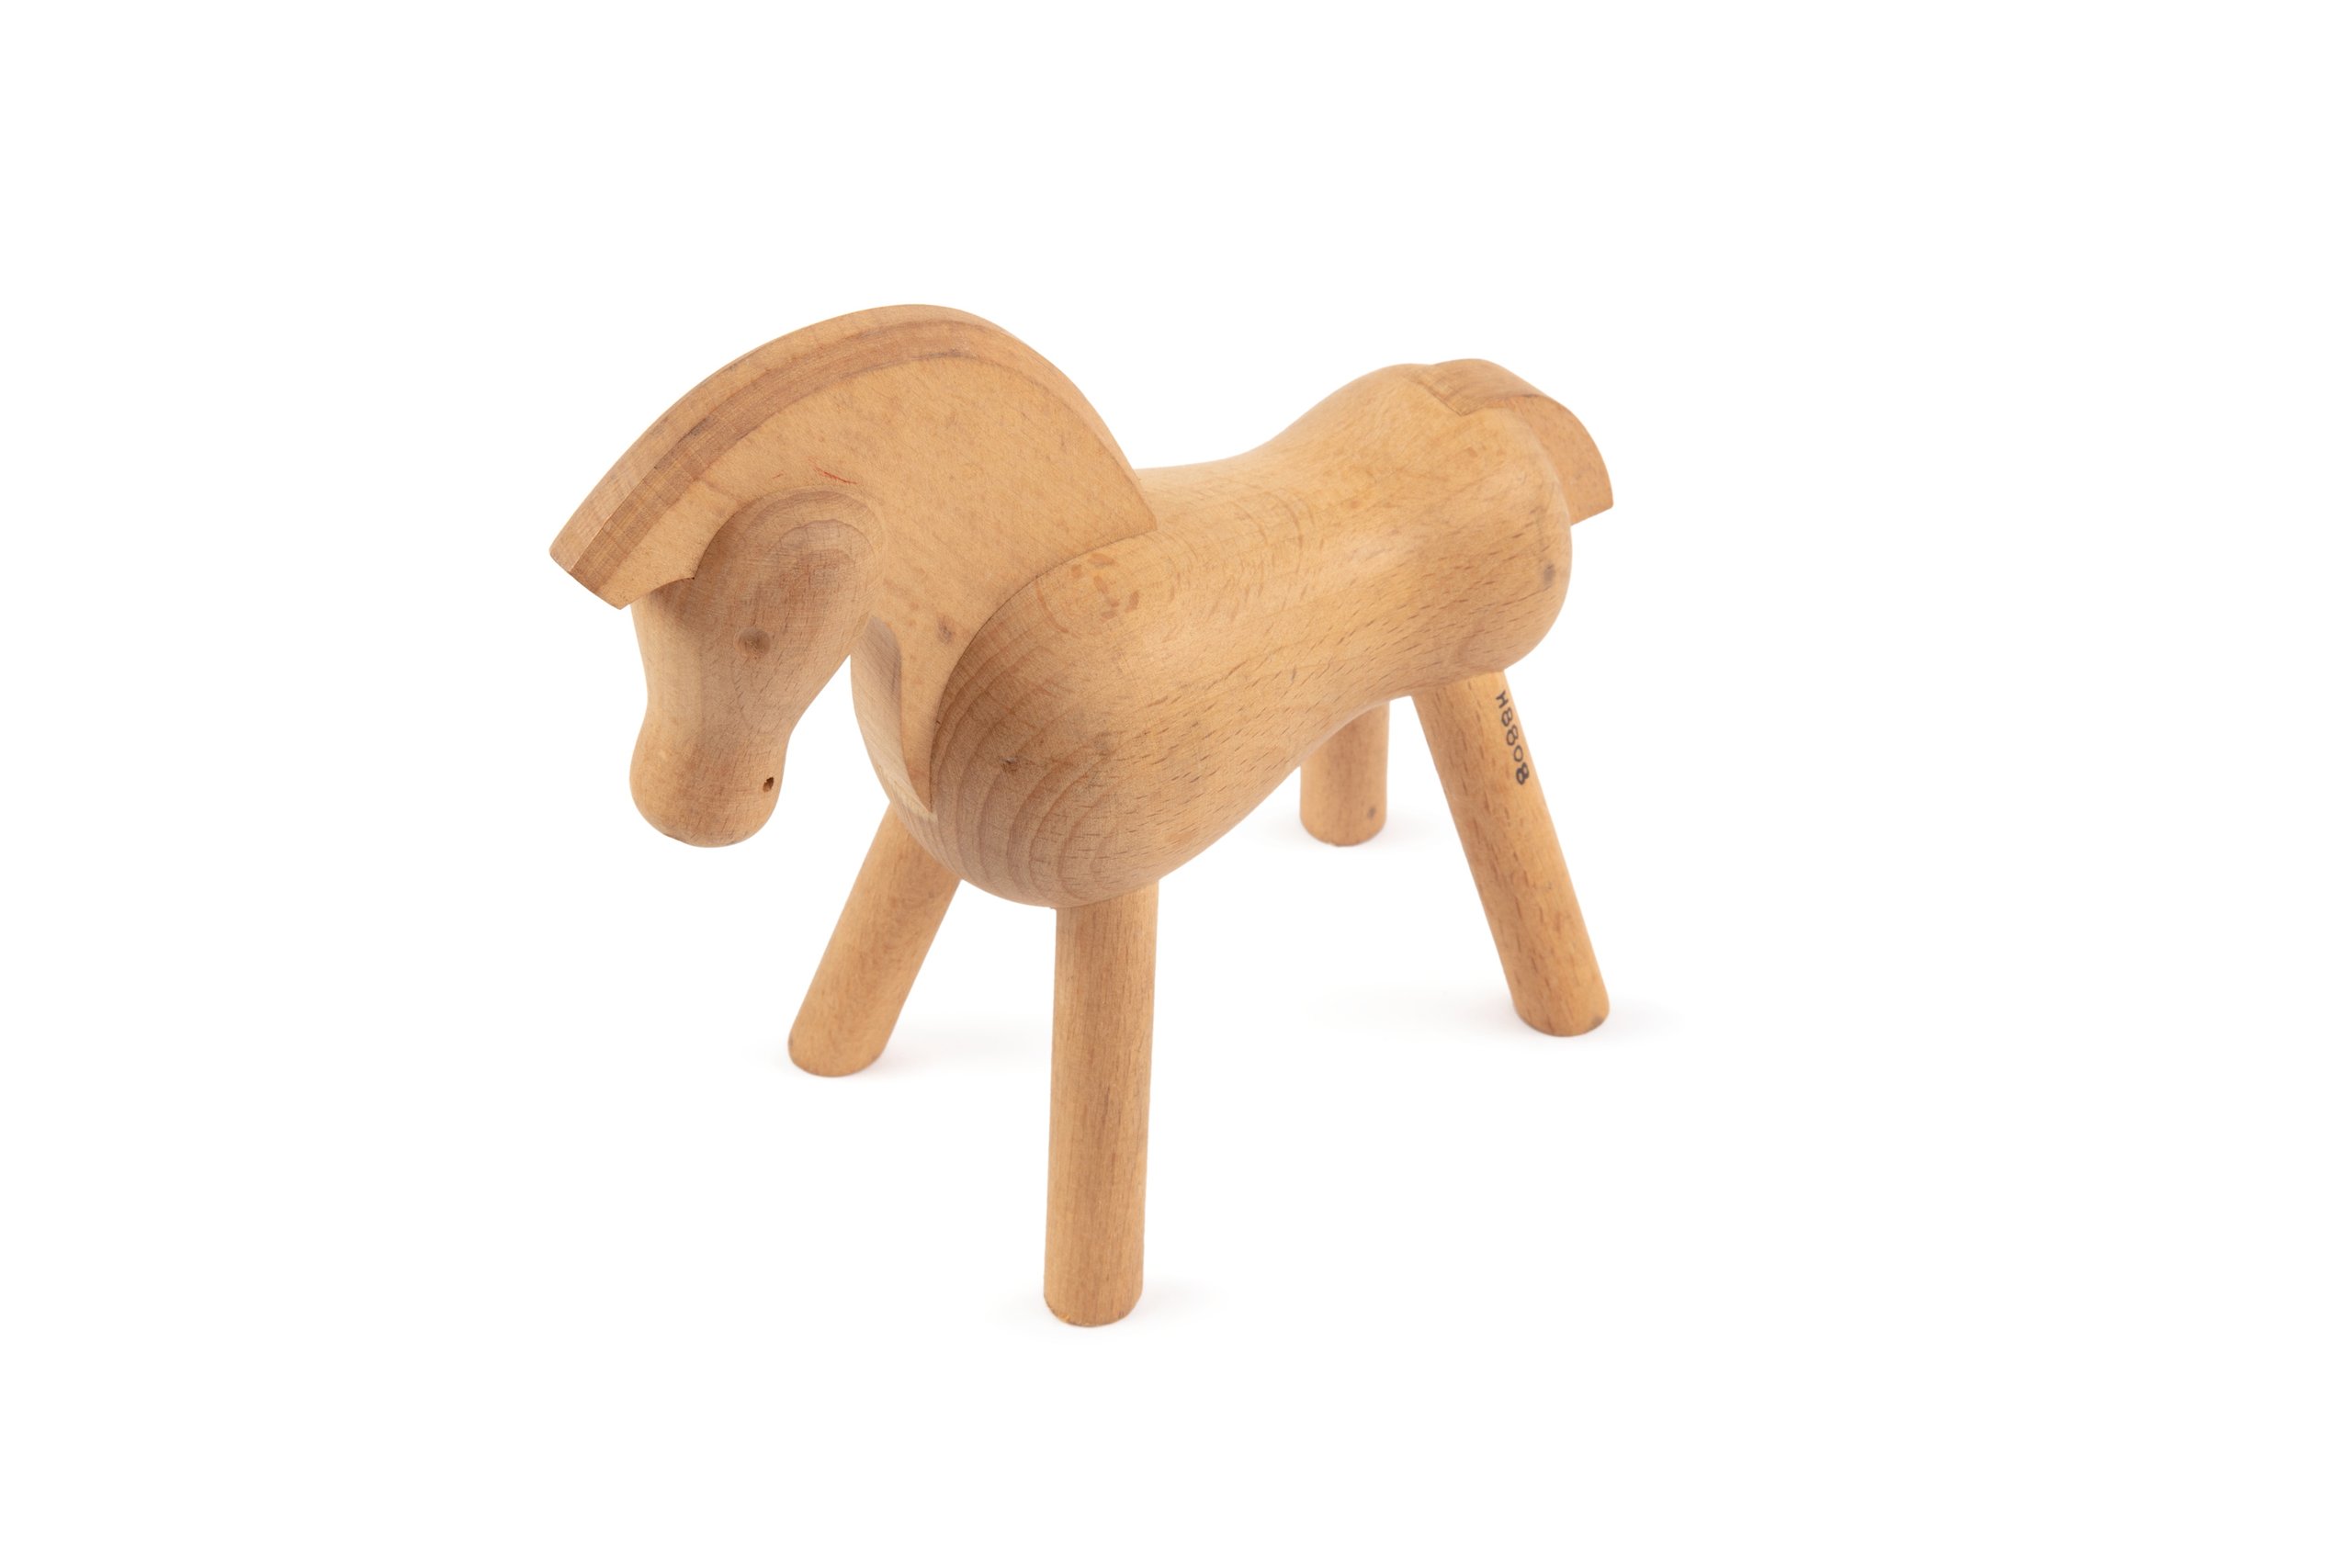 Toy pony designed by Kay Bojesen